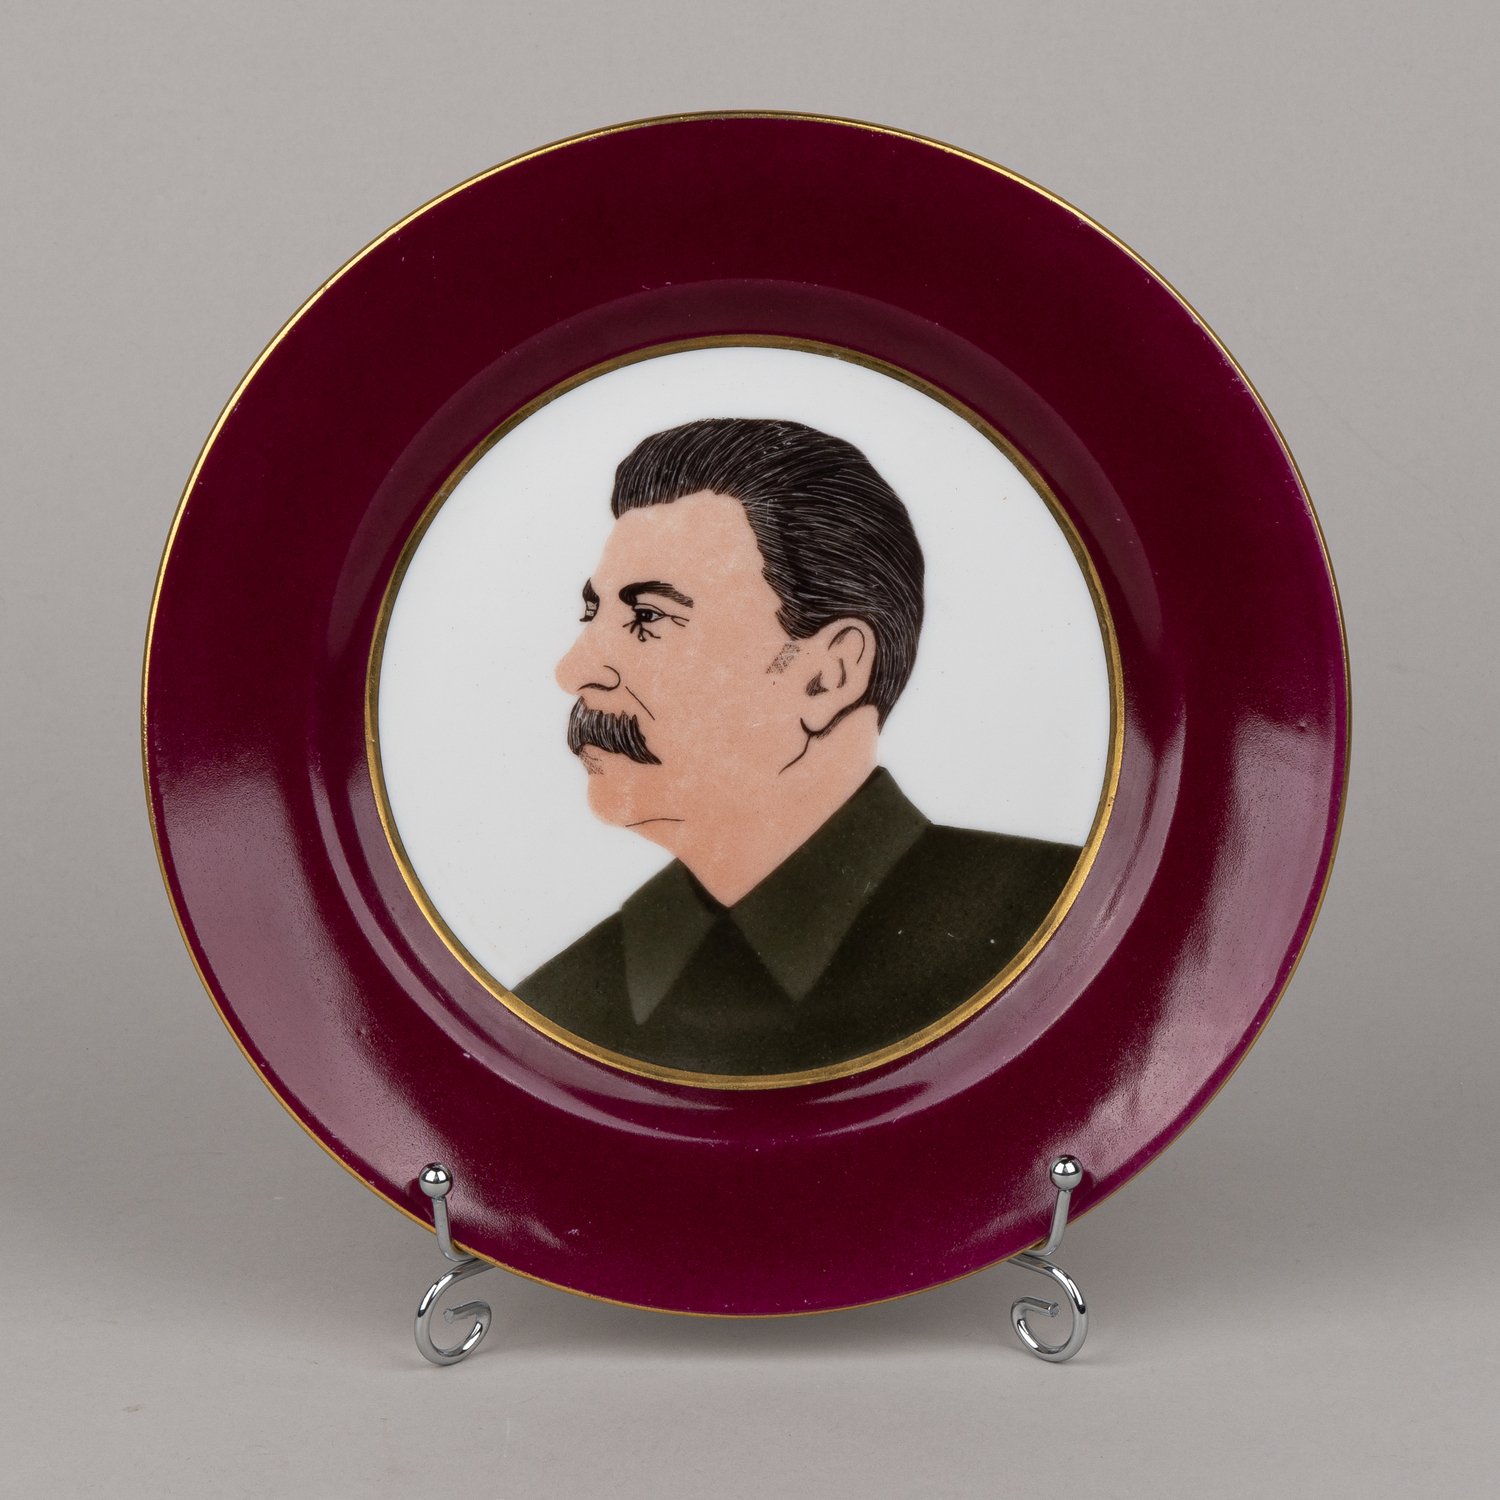 (Красный фарфорист) Тарелка подписная  с портретом Сталина. <br>CCCР, Завод «Красный фарфорист», автор  Горинов , 25 марта 1937.